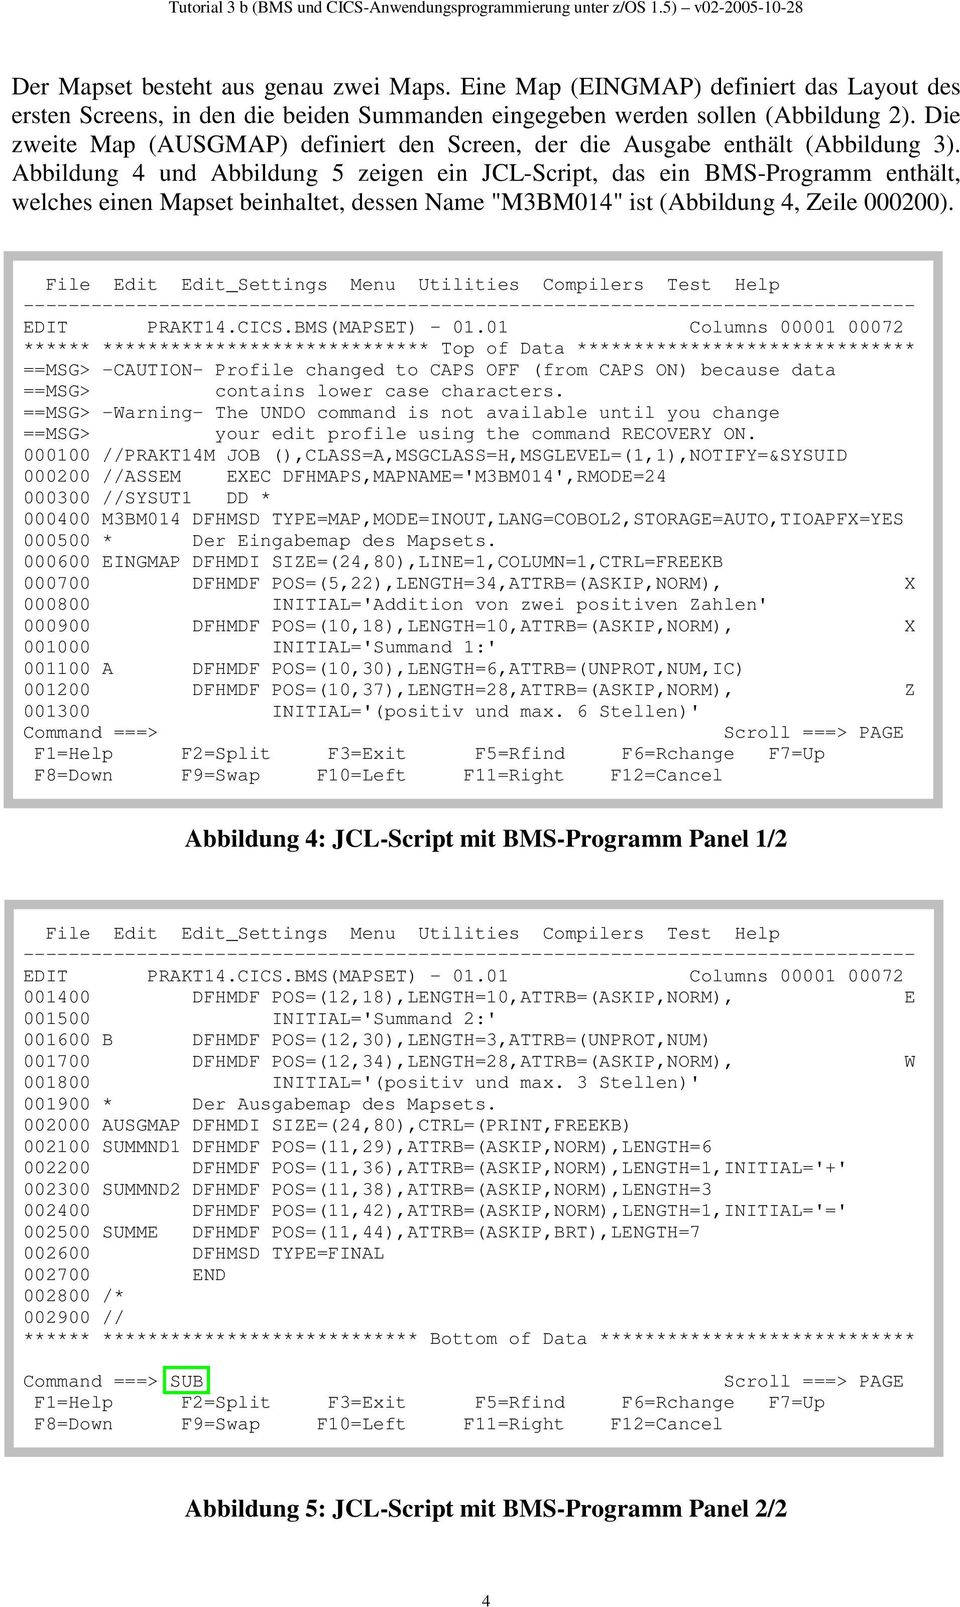 Abbildung 4 und Abbildung 5 zeigen ein JCL-Script, das ein BMS-Programm enthält, welches einen Mapset beinhaltet, dessen Name "M3BM014" ist (Abbildung 4, Zeile 000200).